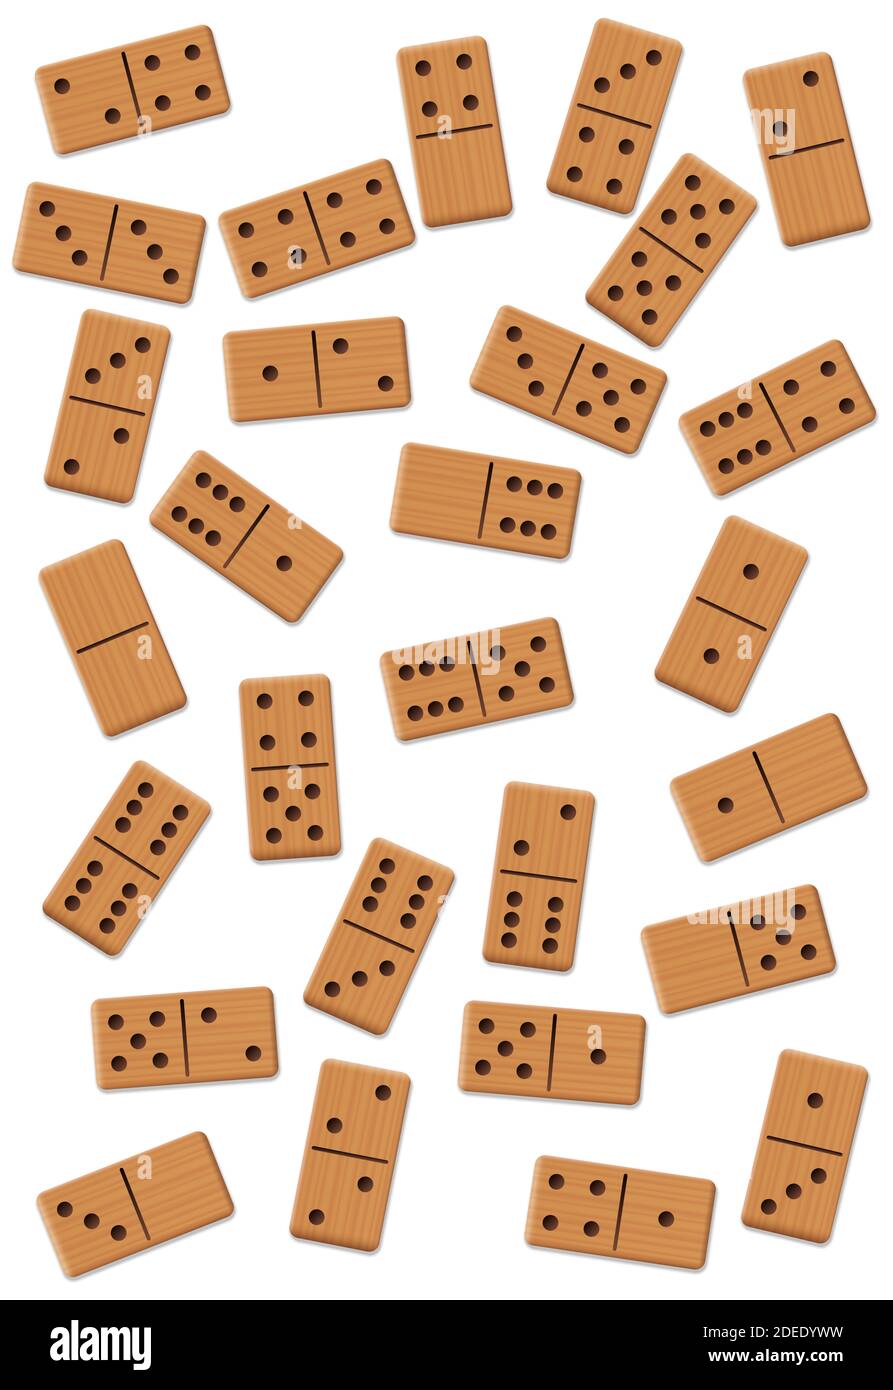 Dominos, épars, agité, mélangé, ensemble de 28 carreaux en bois peu disposés - illustration sur fond blanc. Banque D'Images